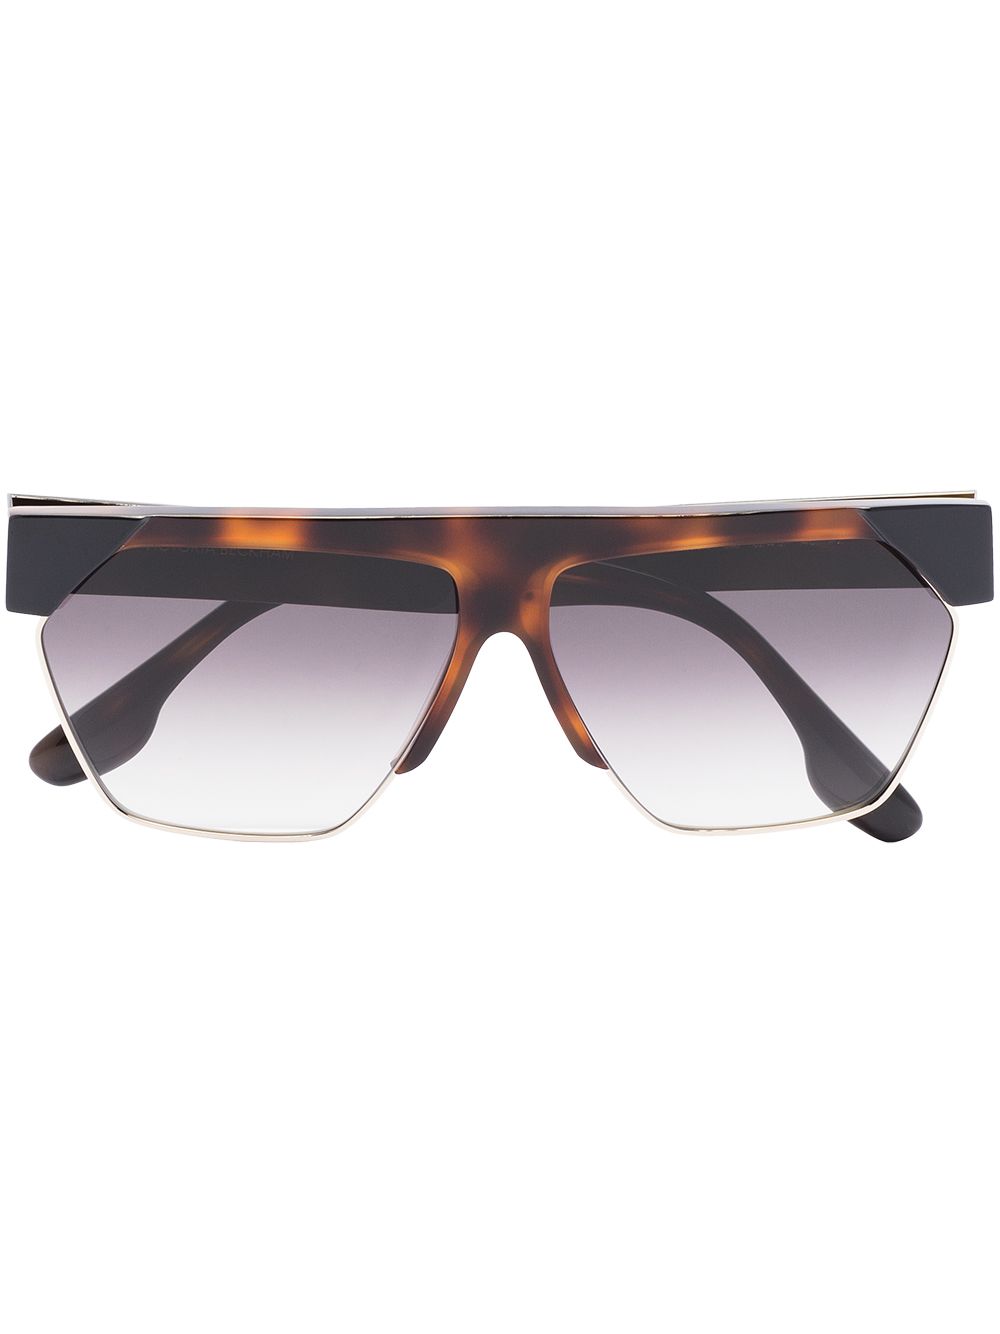 фото Victoria beckham eyewear солнцезащитные очки в оправе черепаховой расцветки